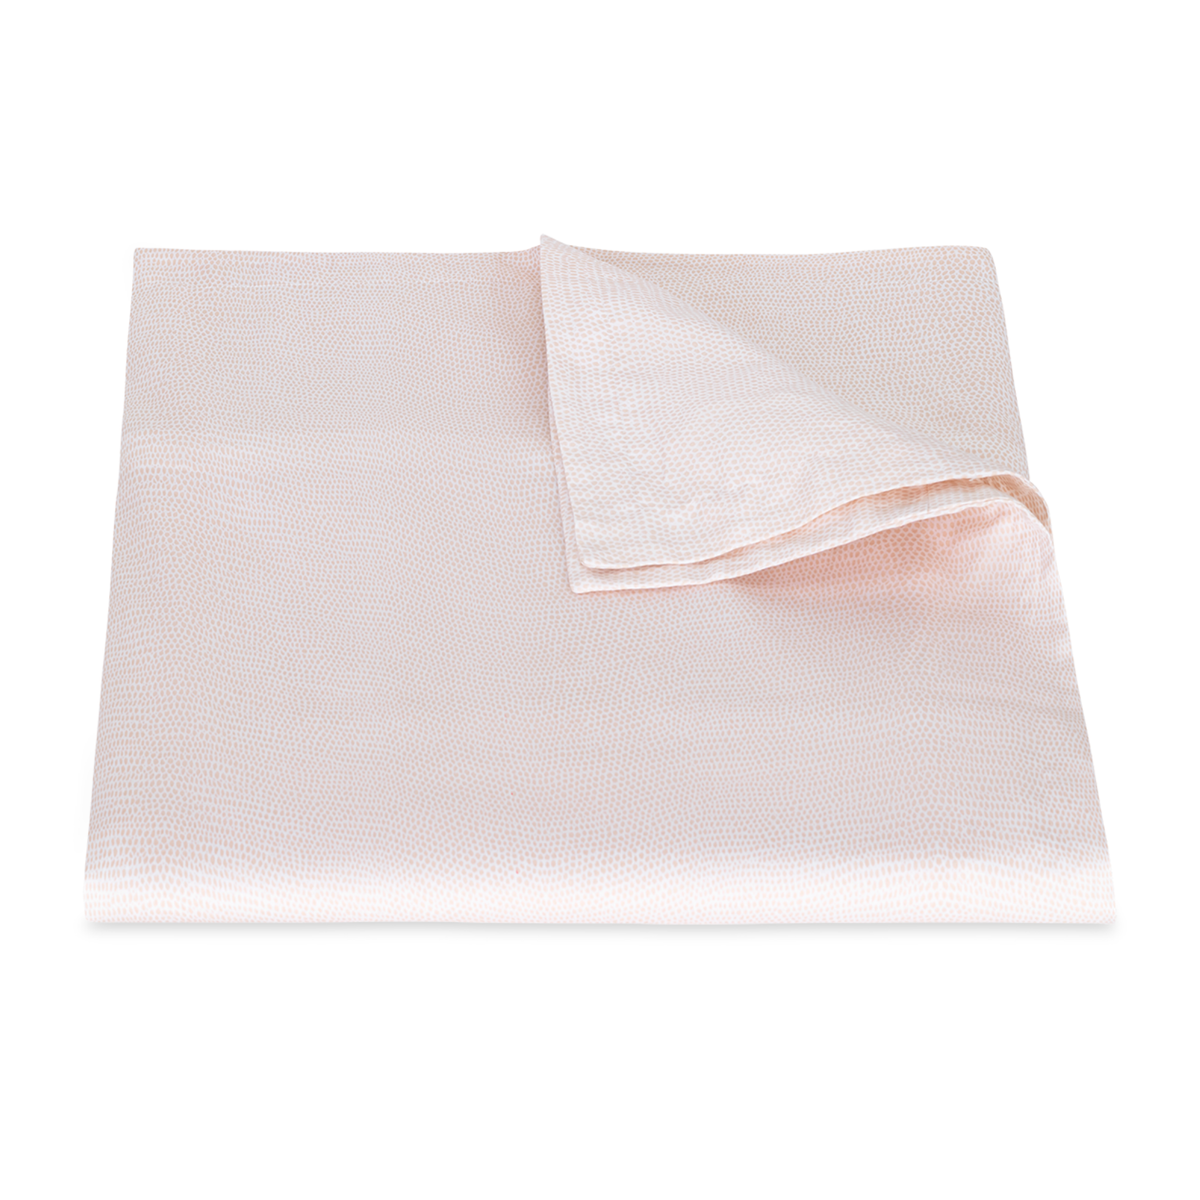 Folded Duvet Cover of Pink Matouk Jasper Bedding